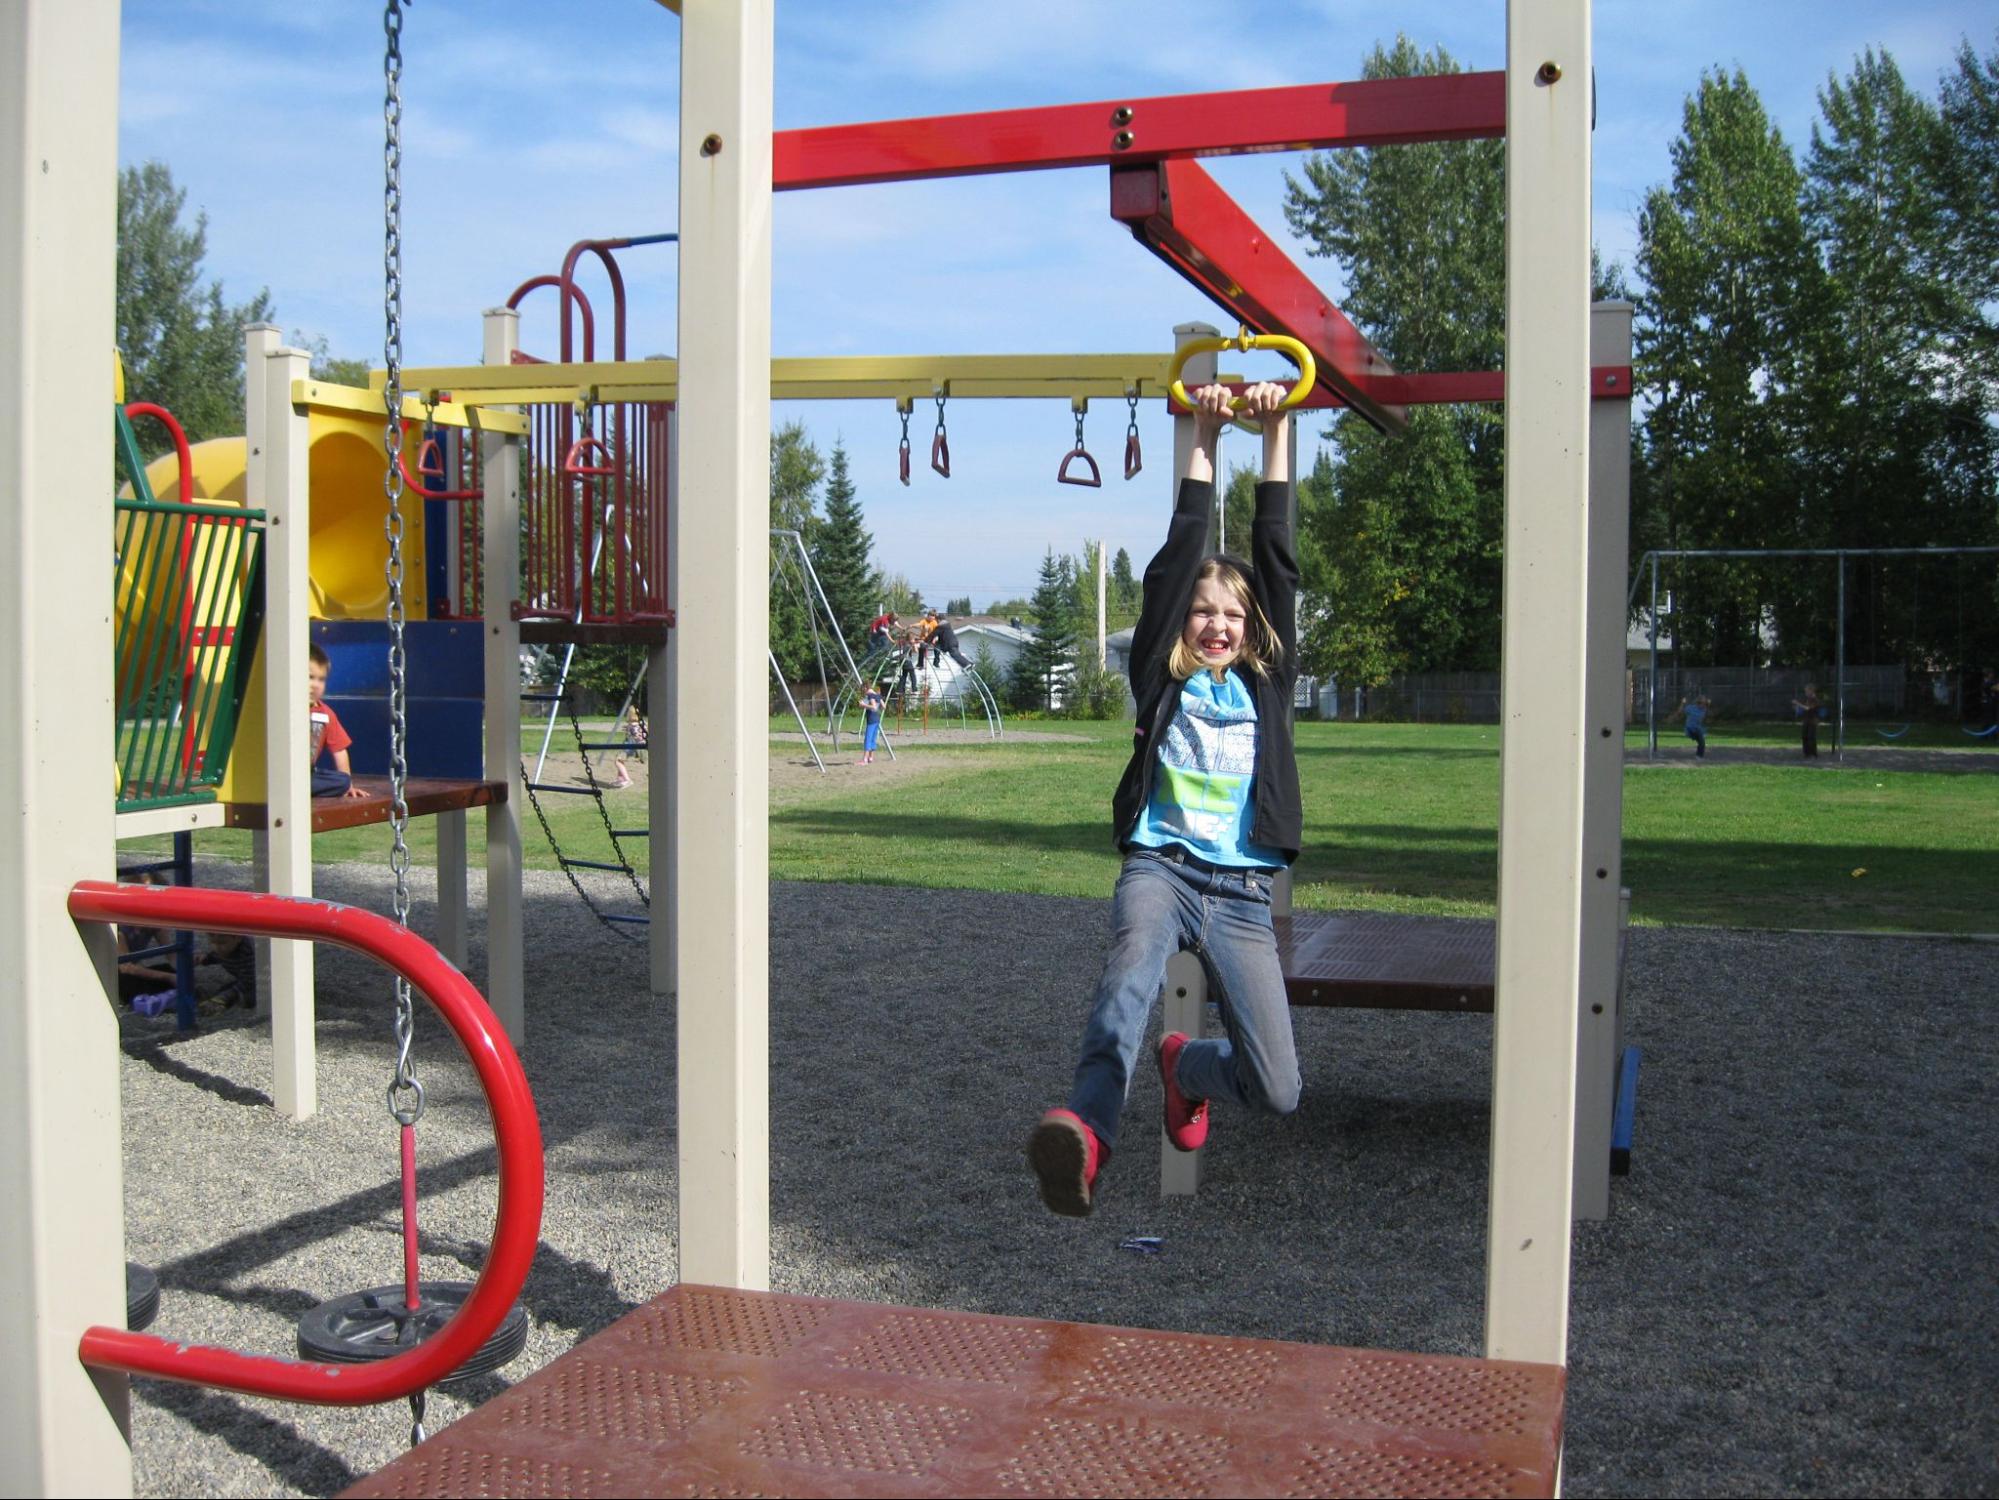 Playground Ziplines: Safe? Or a Playground Safety Hazard?